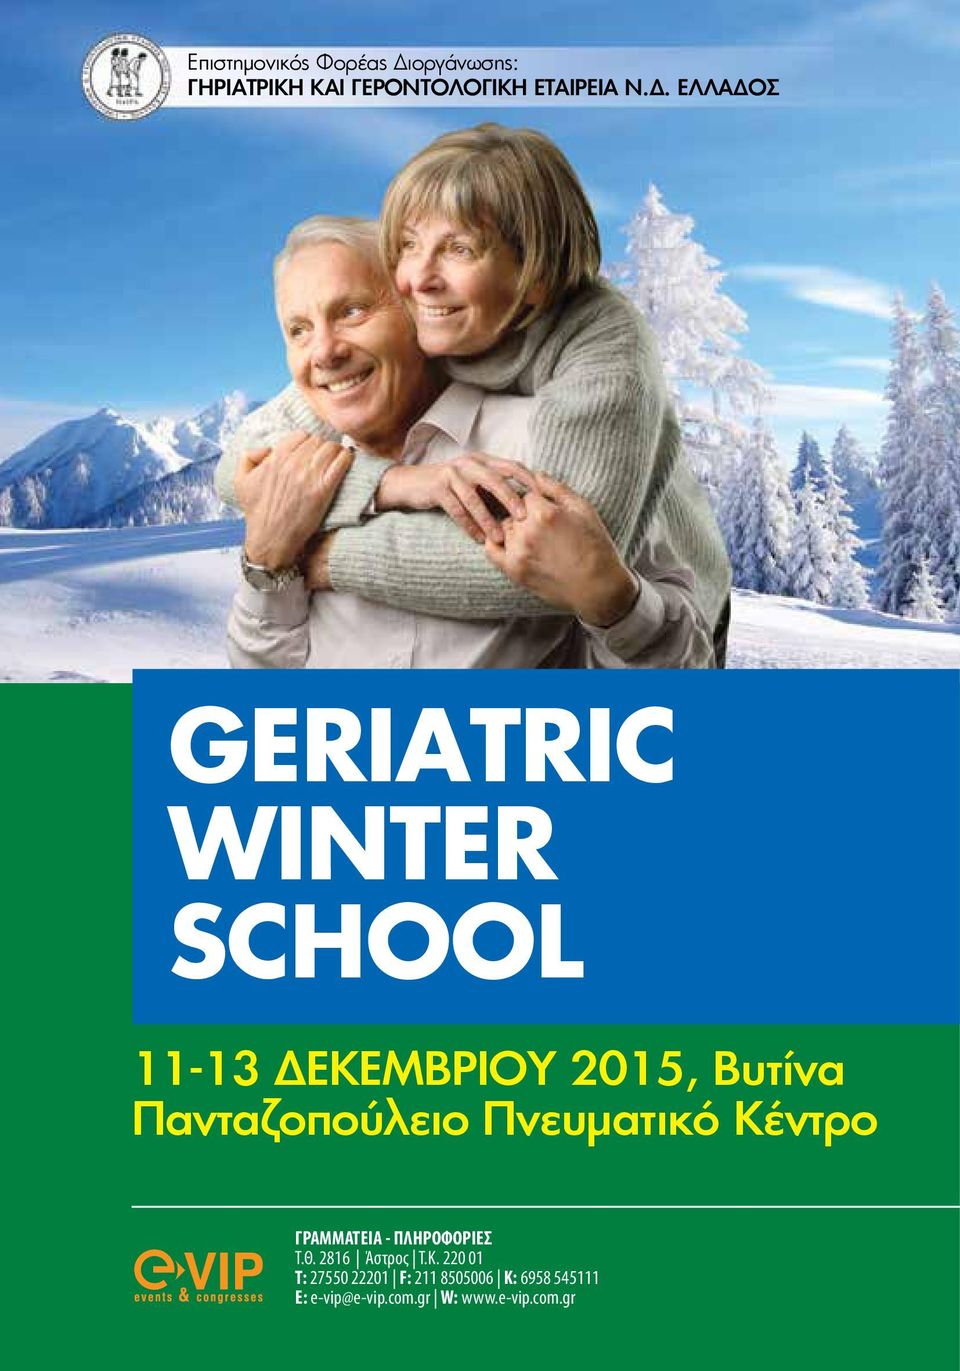 ΕΛΛΑΔΟΣ GERIATRIC WINTER SCHOOL 11-13 ΔΕΚΕΜΒΡΙΟΥ 2015, Βυτίνα Πανταζοπούλειο